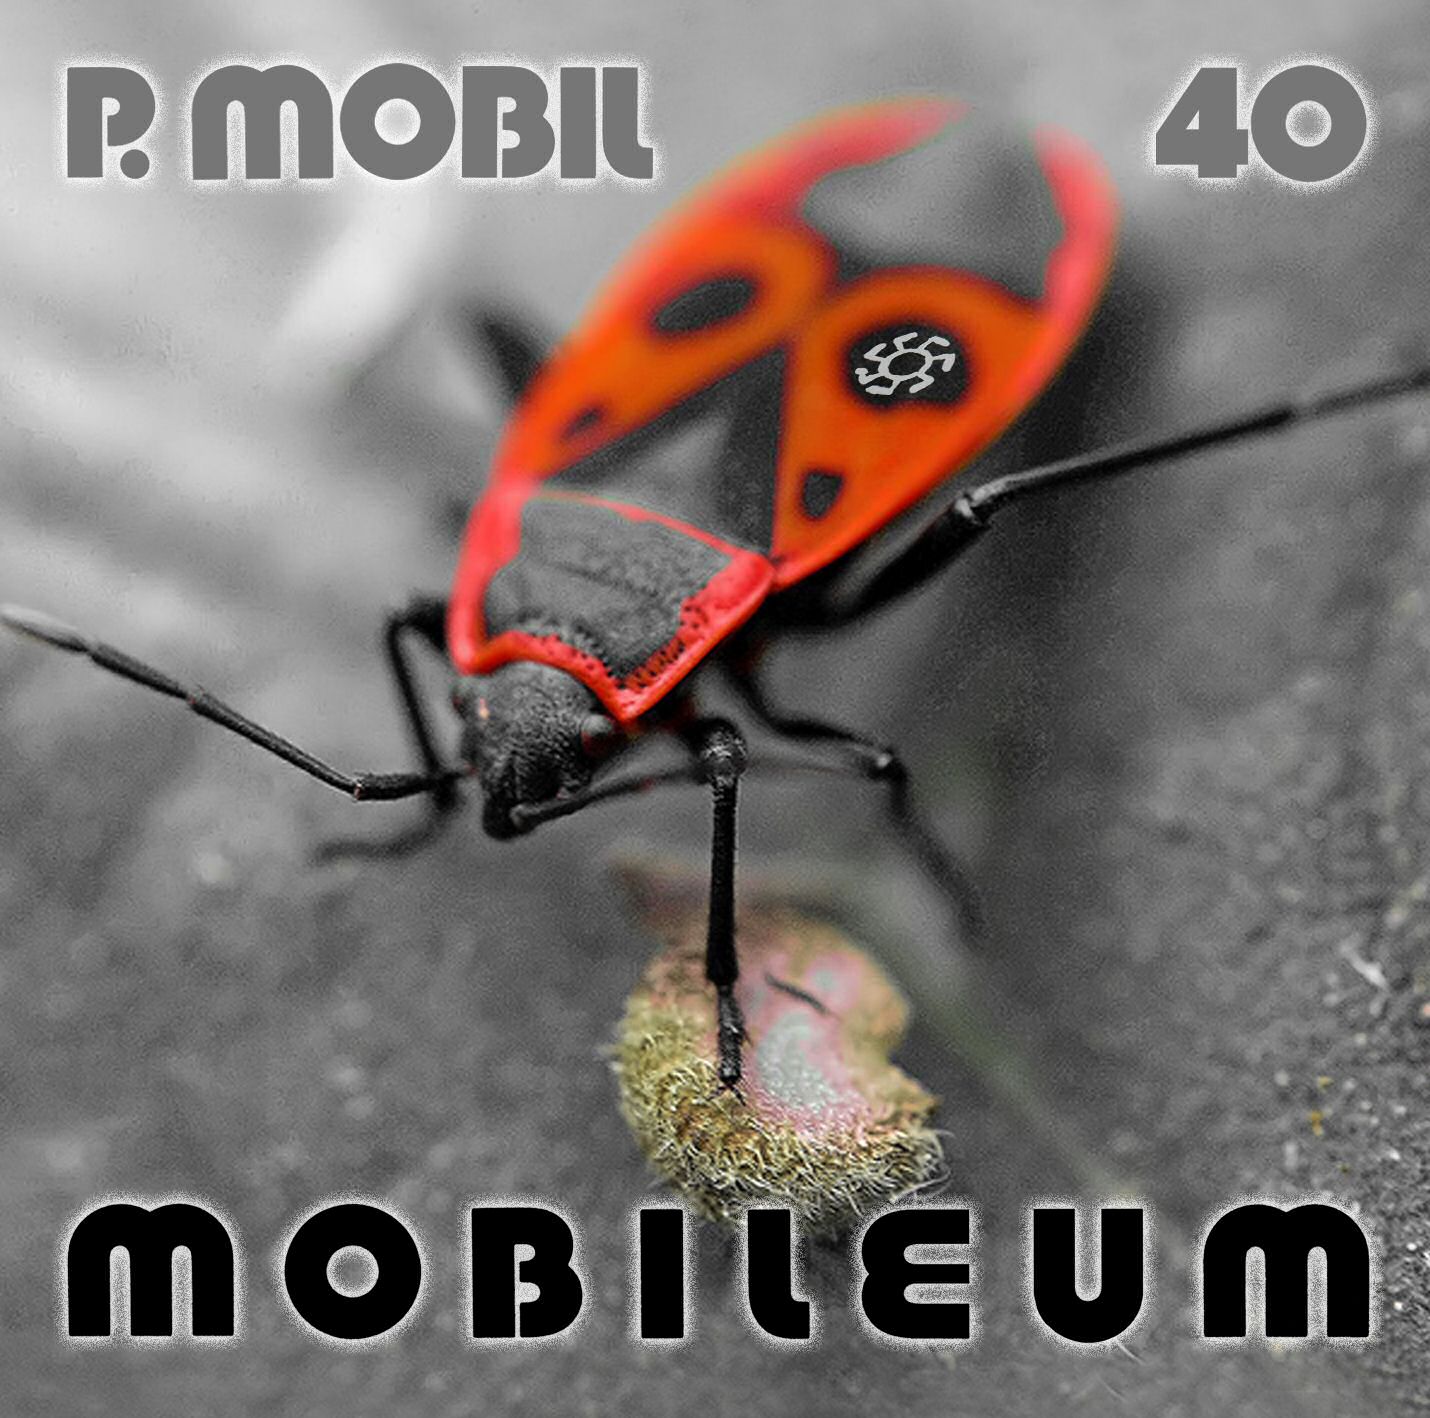 P.Mobil  - Mobileum cover